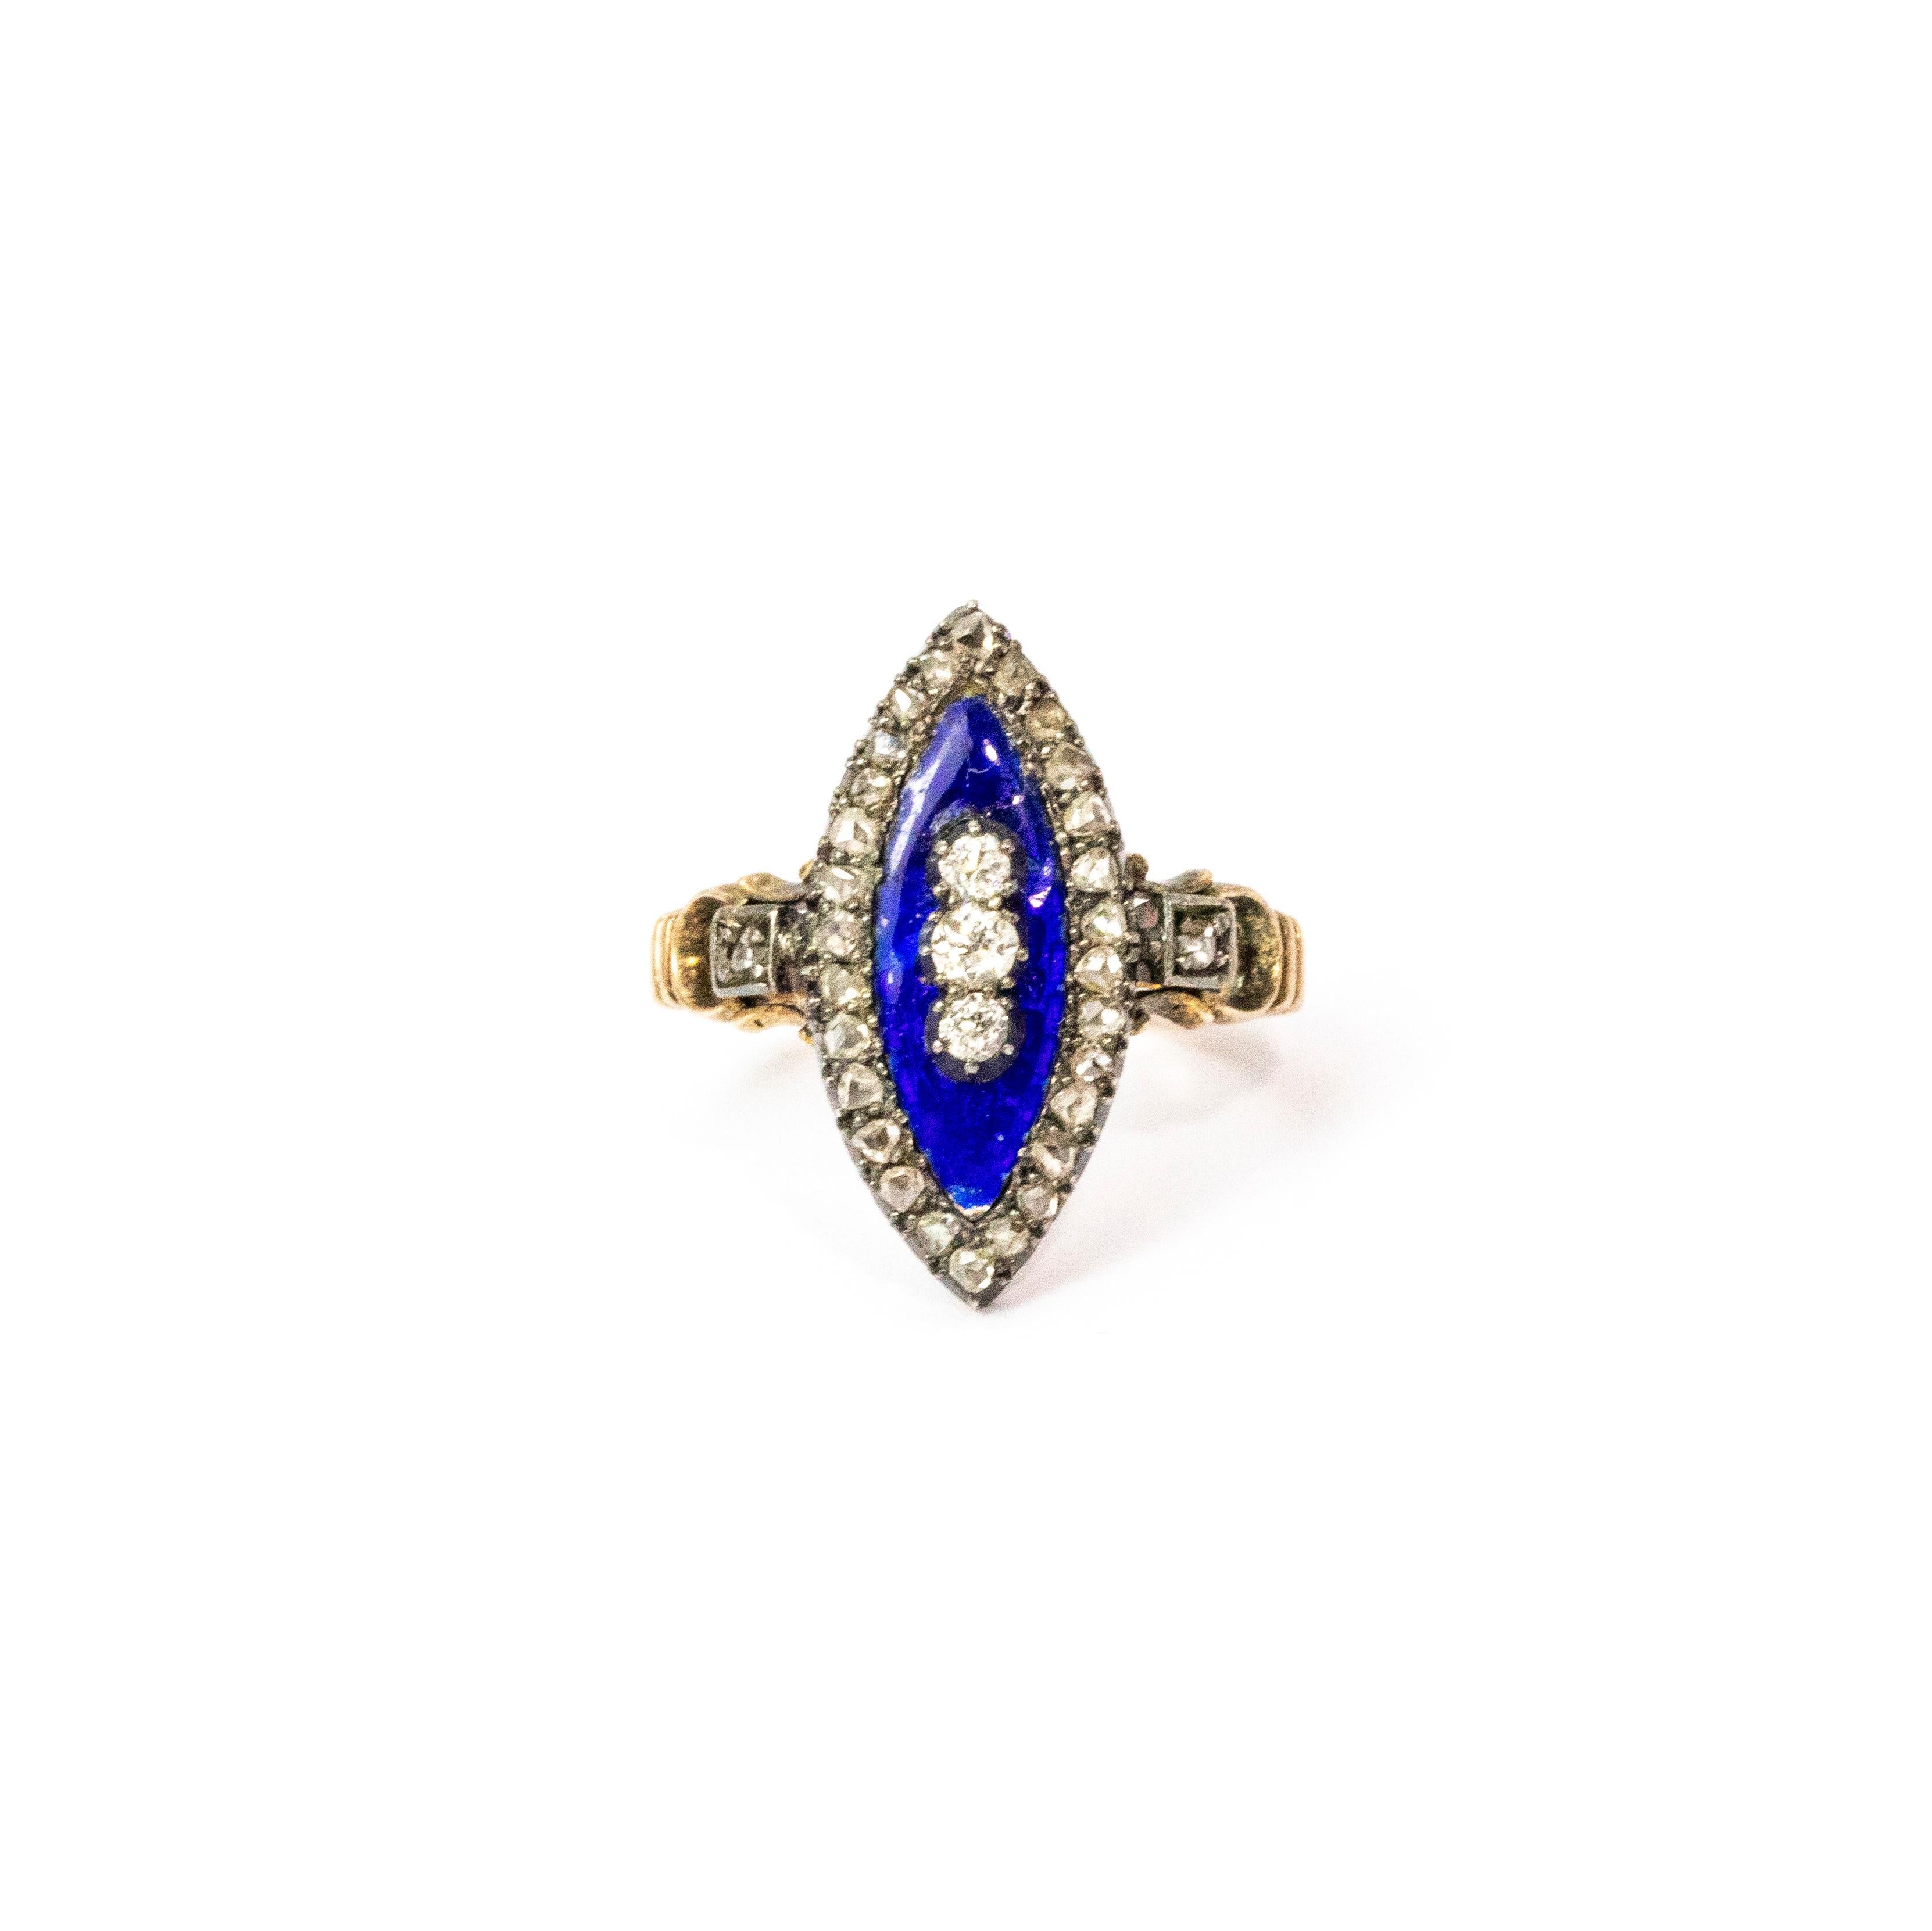 Ein hervorragender spätgeorgianischer Ring, gefertigt um 1830. Die Navette ist blau emailliert und in der Mitte mit einer Reihe feiner weißer Diamanten besetzt. Weitere schöne Diamanten befinden sich an den Rändern und erstrecken sich über die